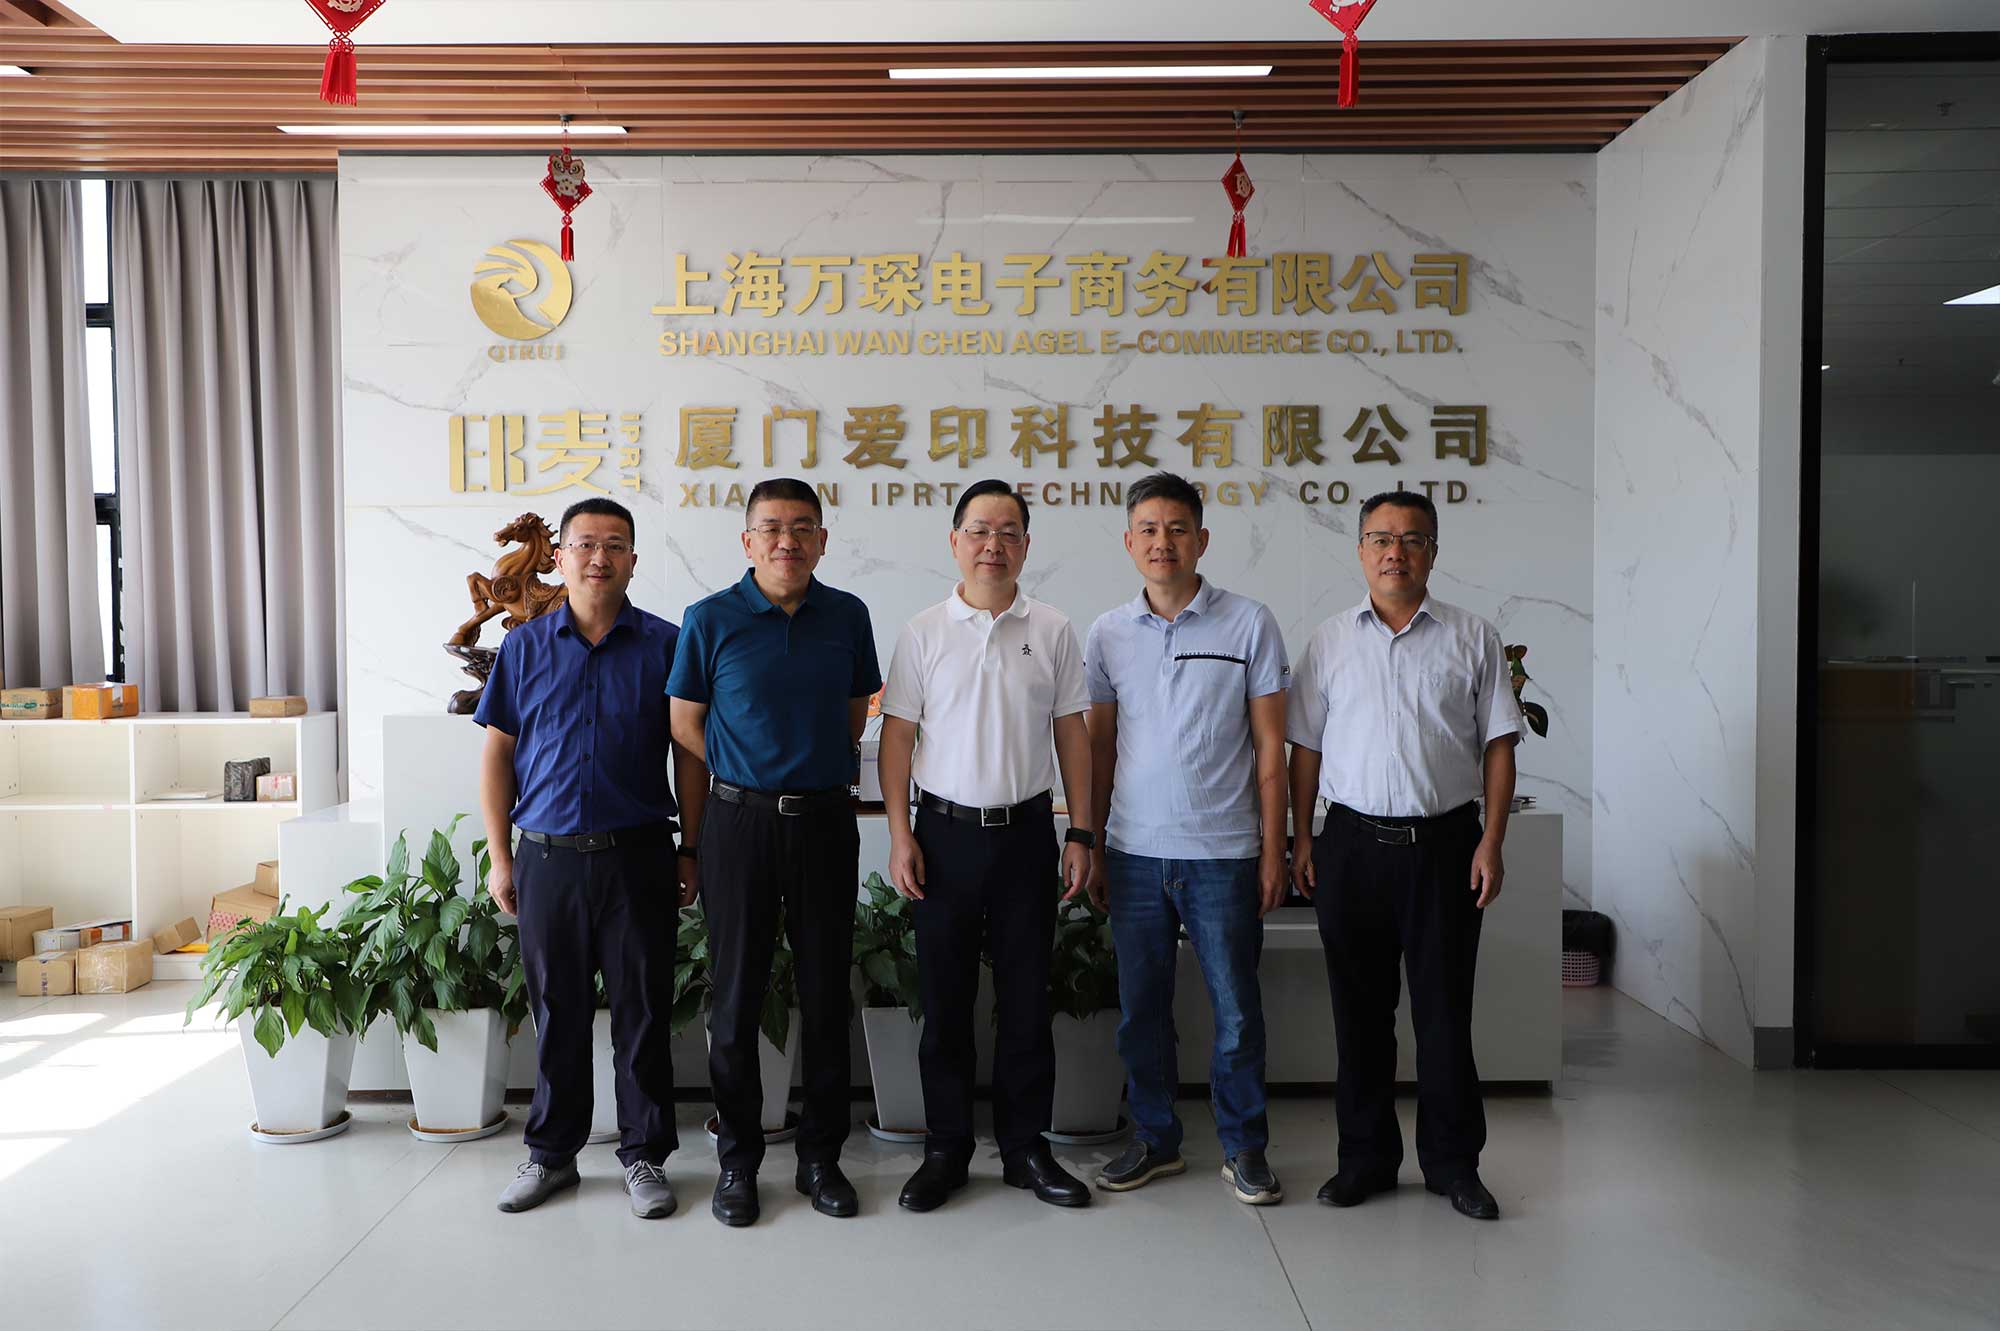 Vice-president van Xiamen CPPCC Li Qinhui en anderen bezochten IPRT Technology voor onderzoek en begeleiding